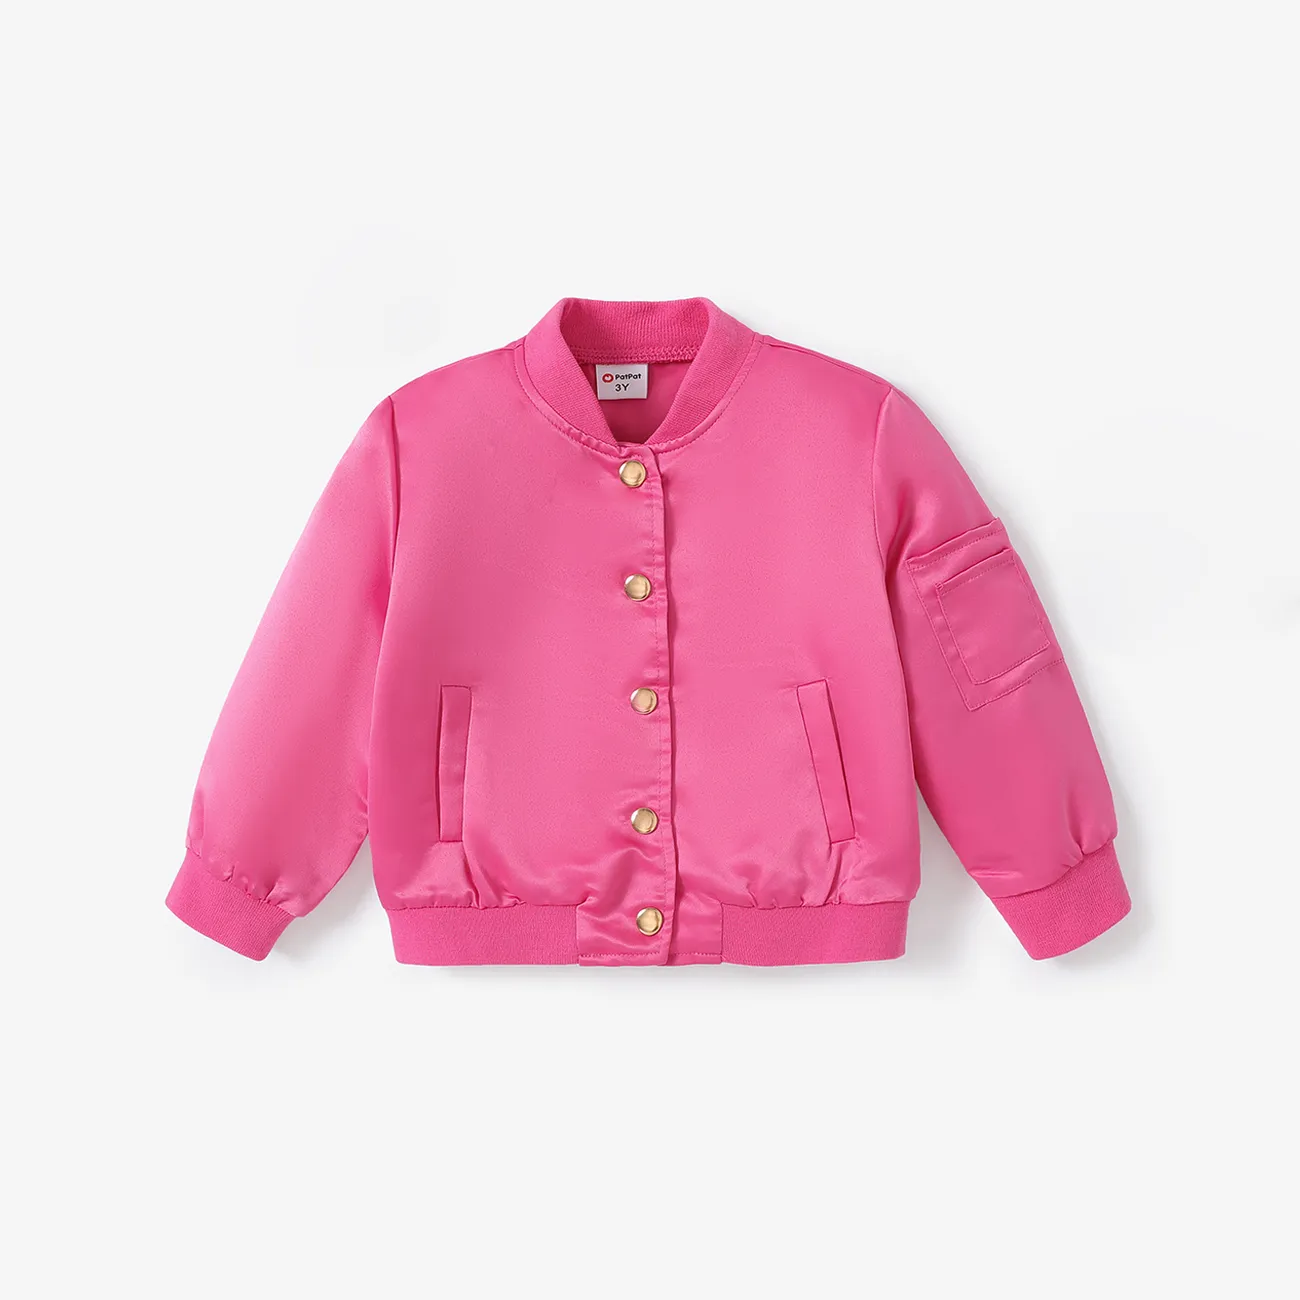 Toddler  Girl Solid Color Button Design Avant-garde Jacket Hot Pink big image 1